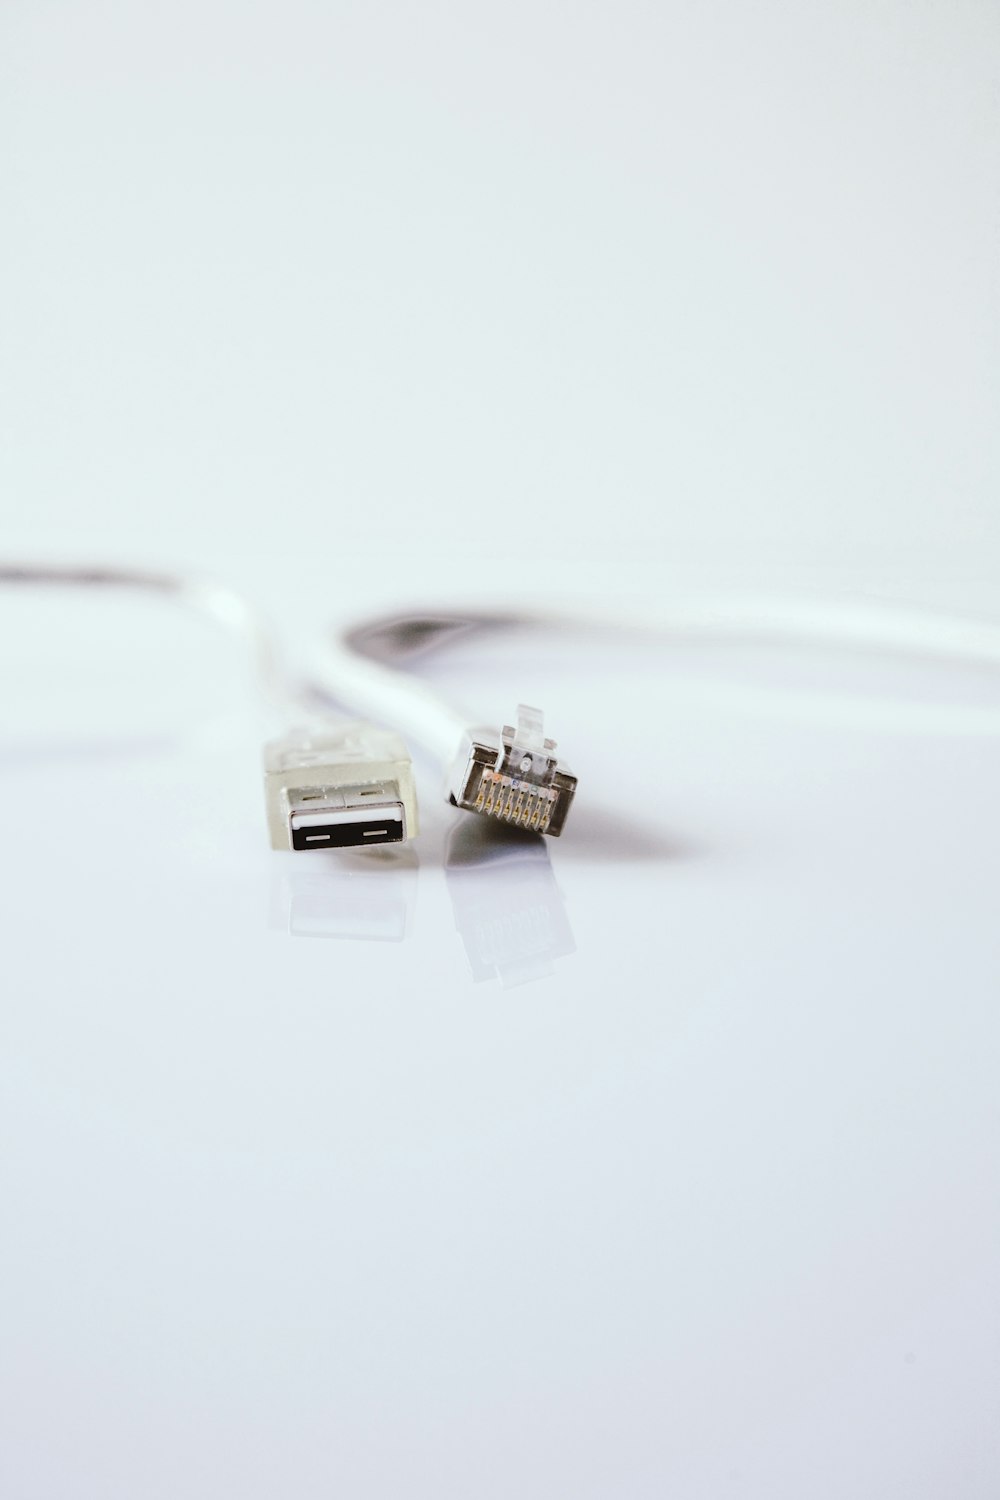 Weißes USB-Kabel auf weißer Oberfläche